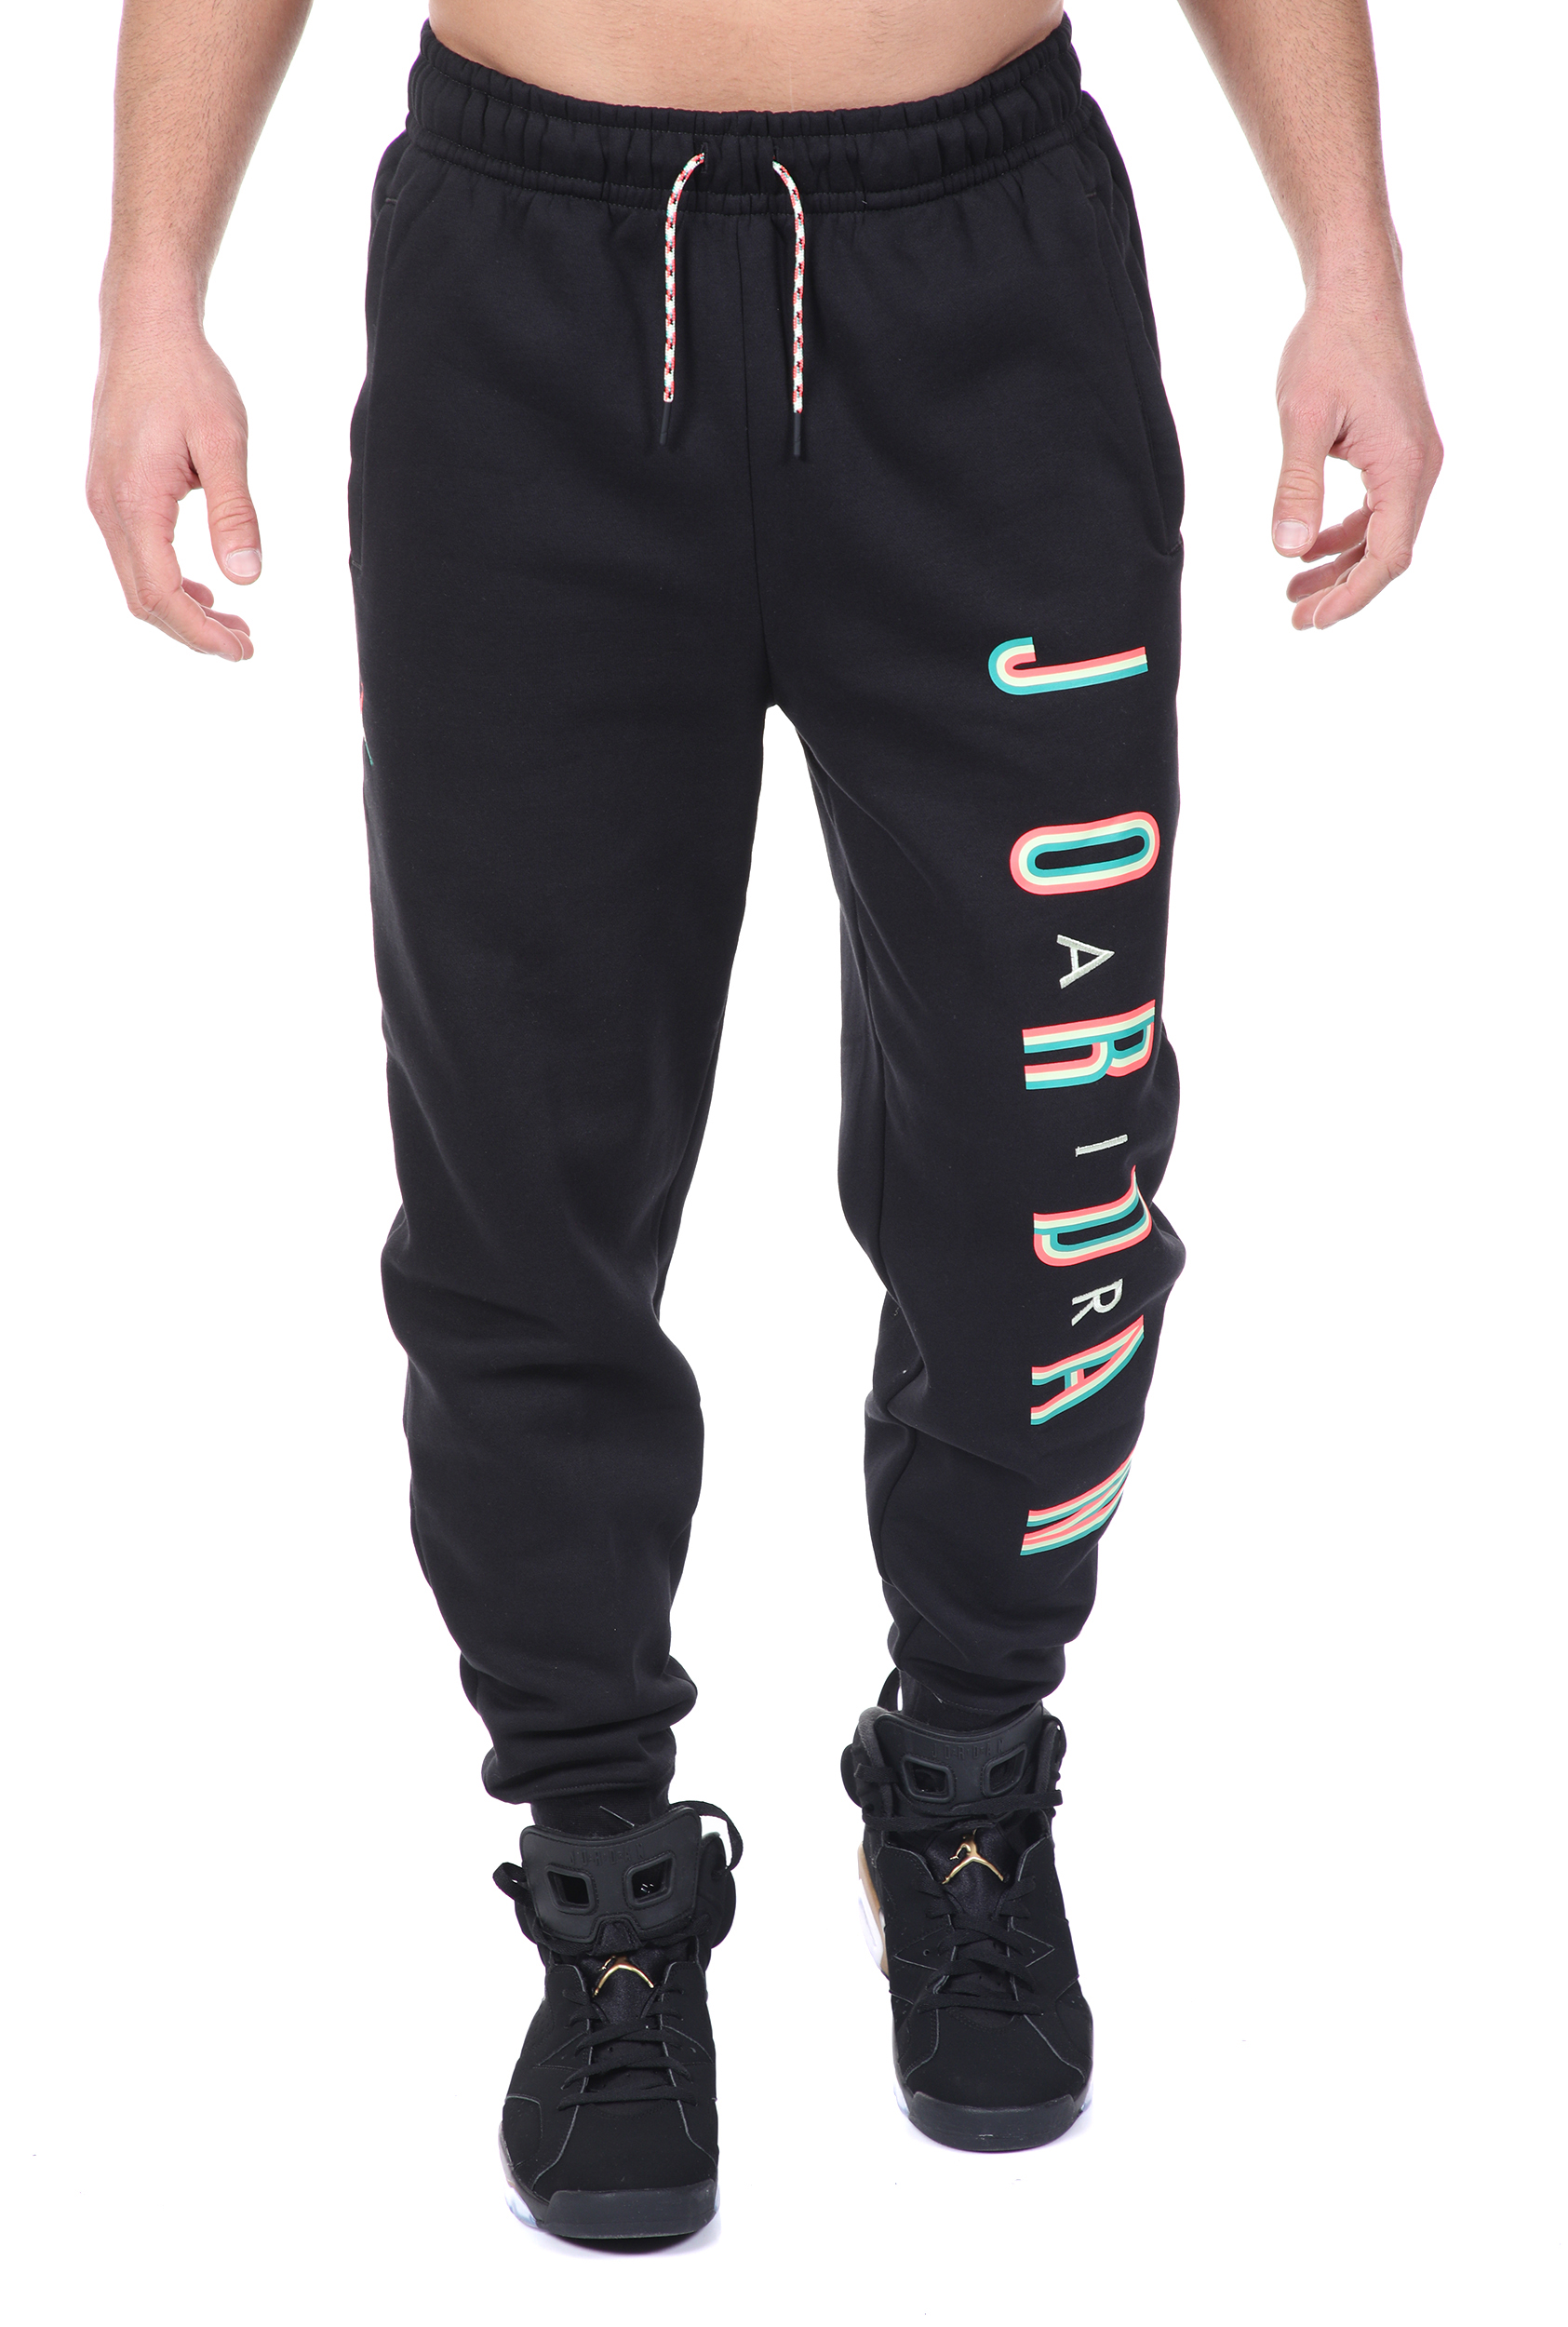 Ανδρικά/Ρούχα/Αθλητικά/Φόρμες NIKE - Ανδρικό παντελόνι φόρμας NIKE M J SPRT DNA HBR PANT μαύρο